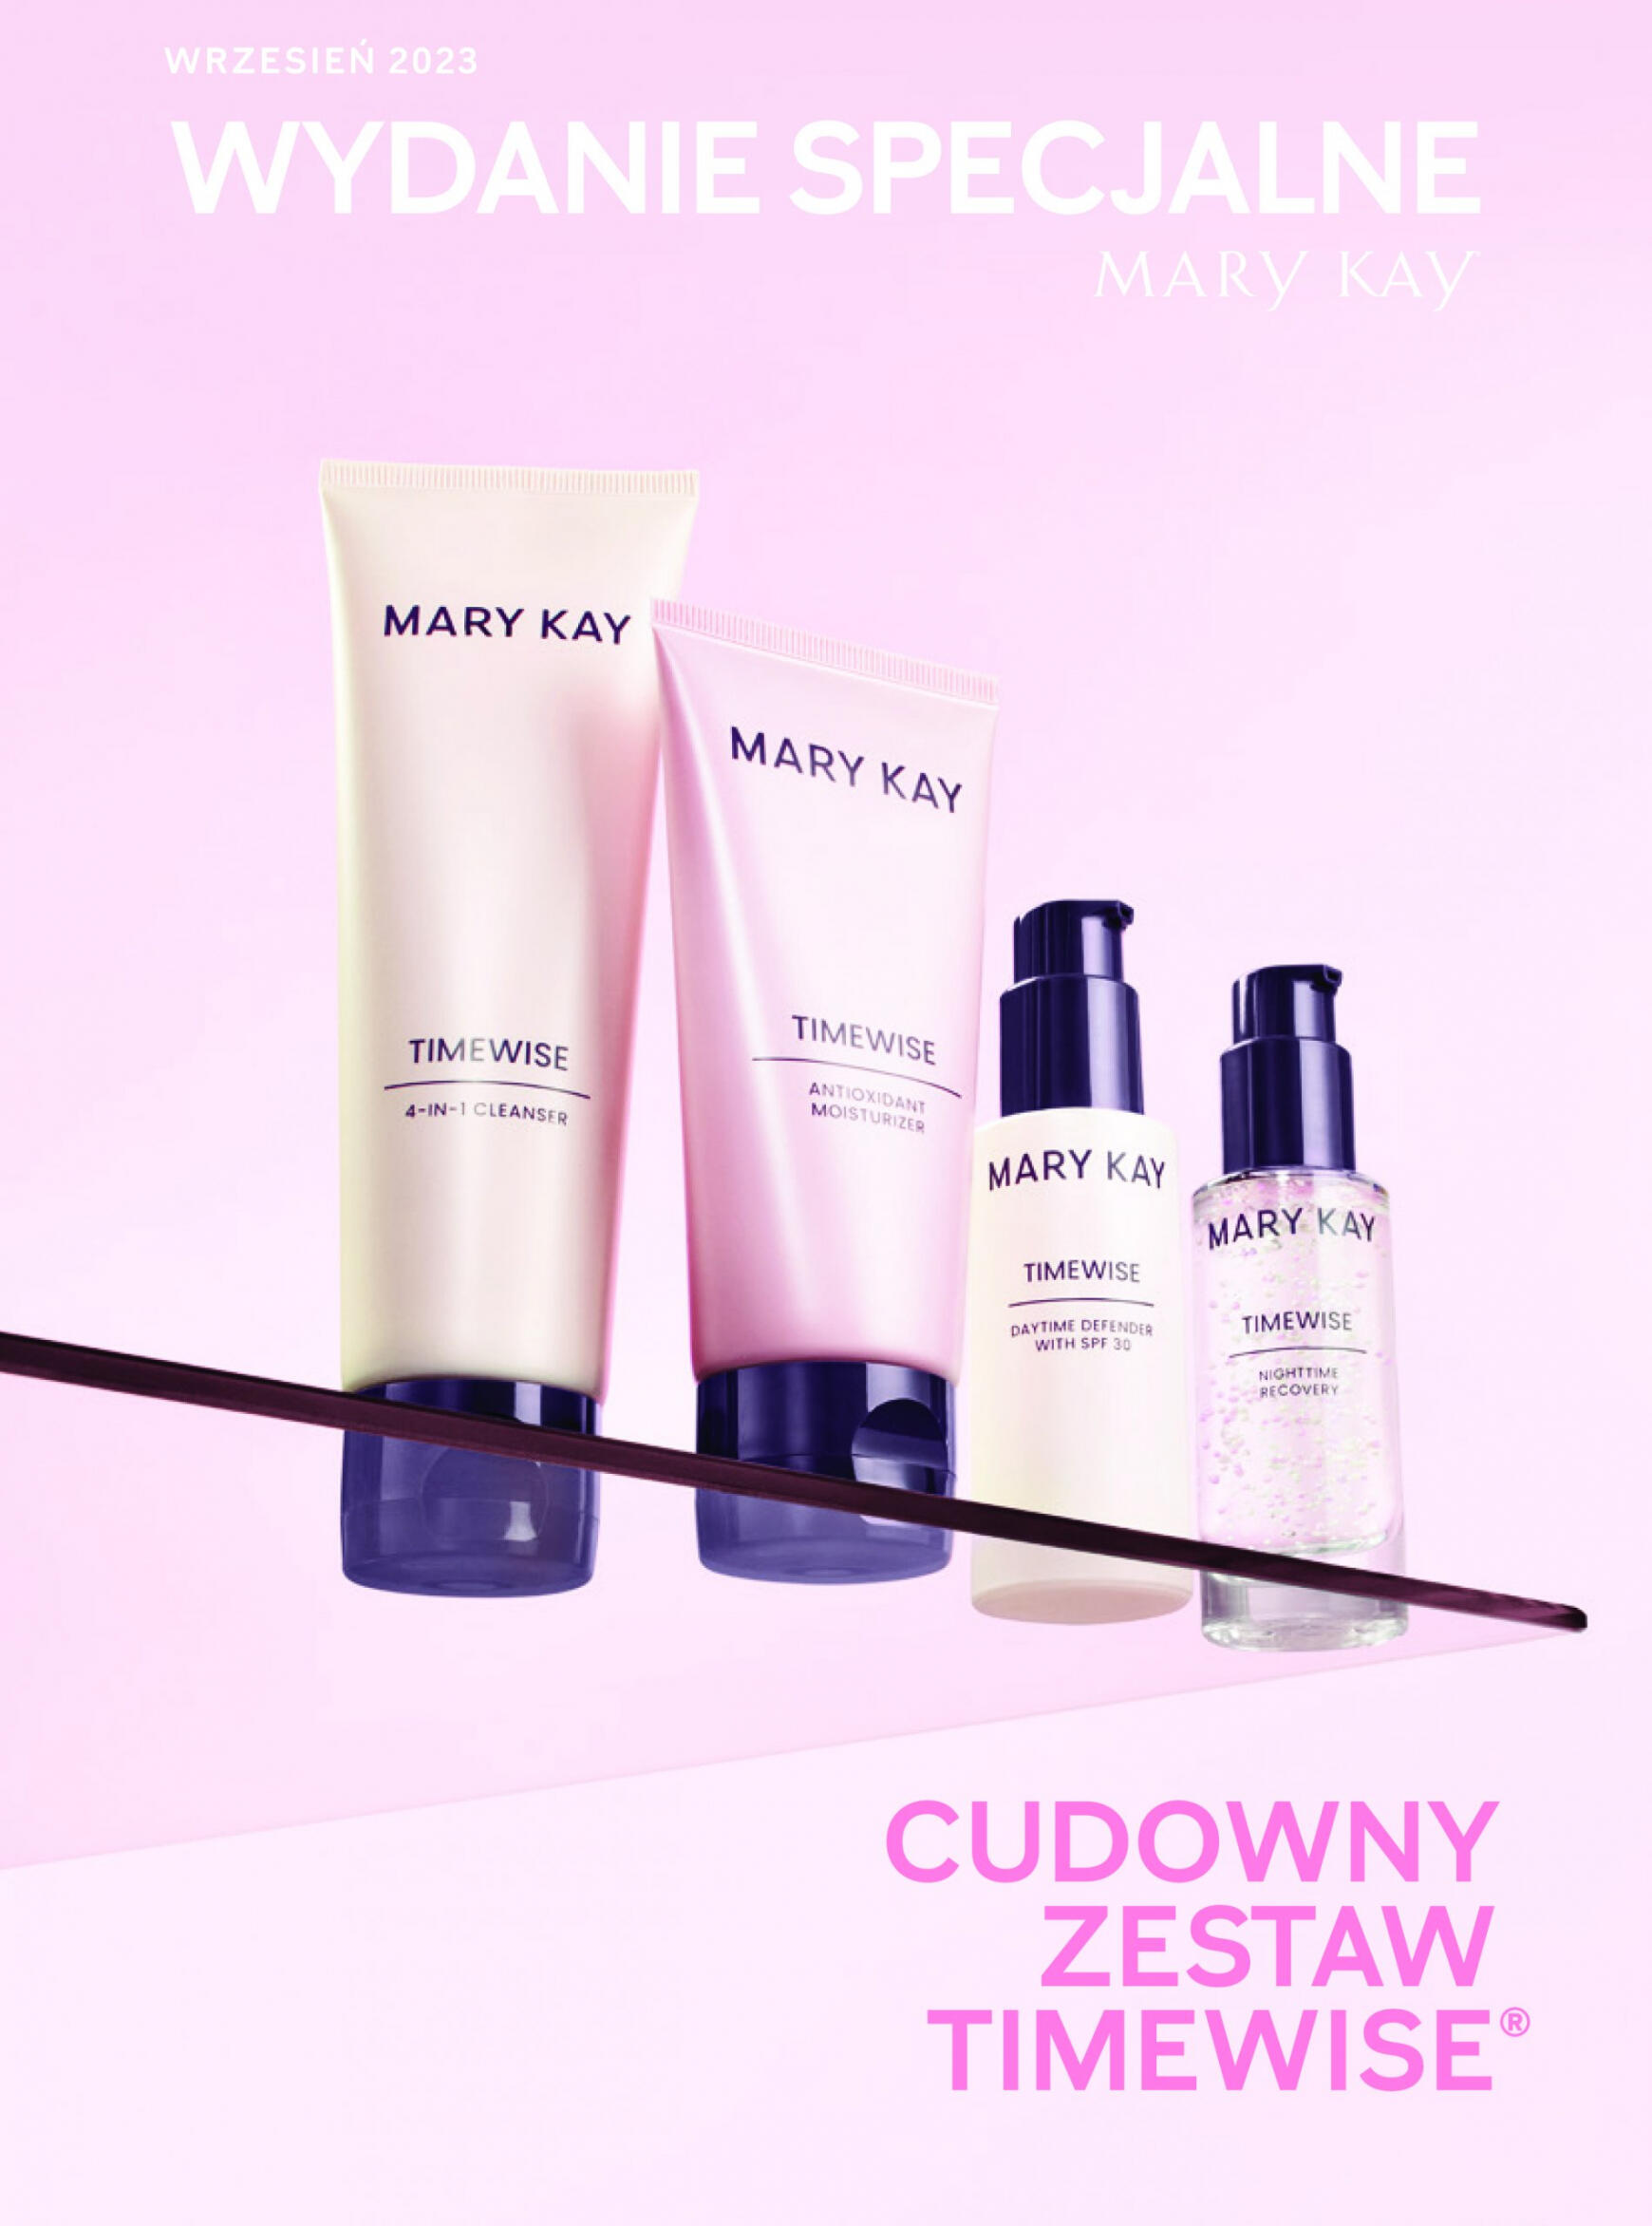 mary-kay - Mary Kay - Wydanie Specjalne - Cudowny Zestaw - page: 1